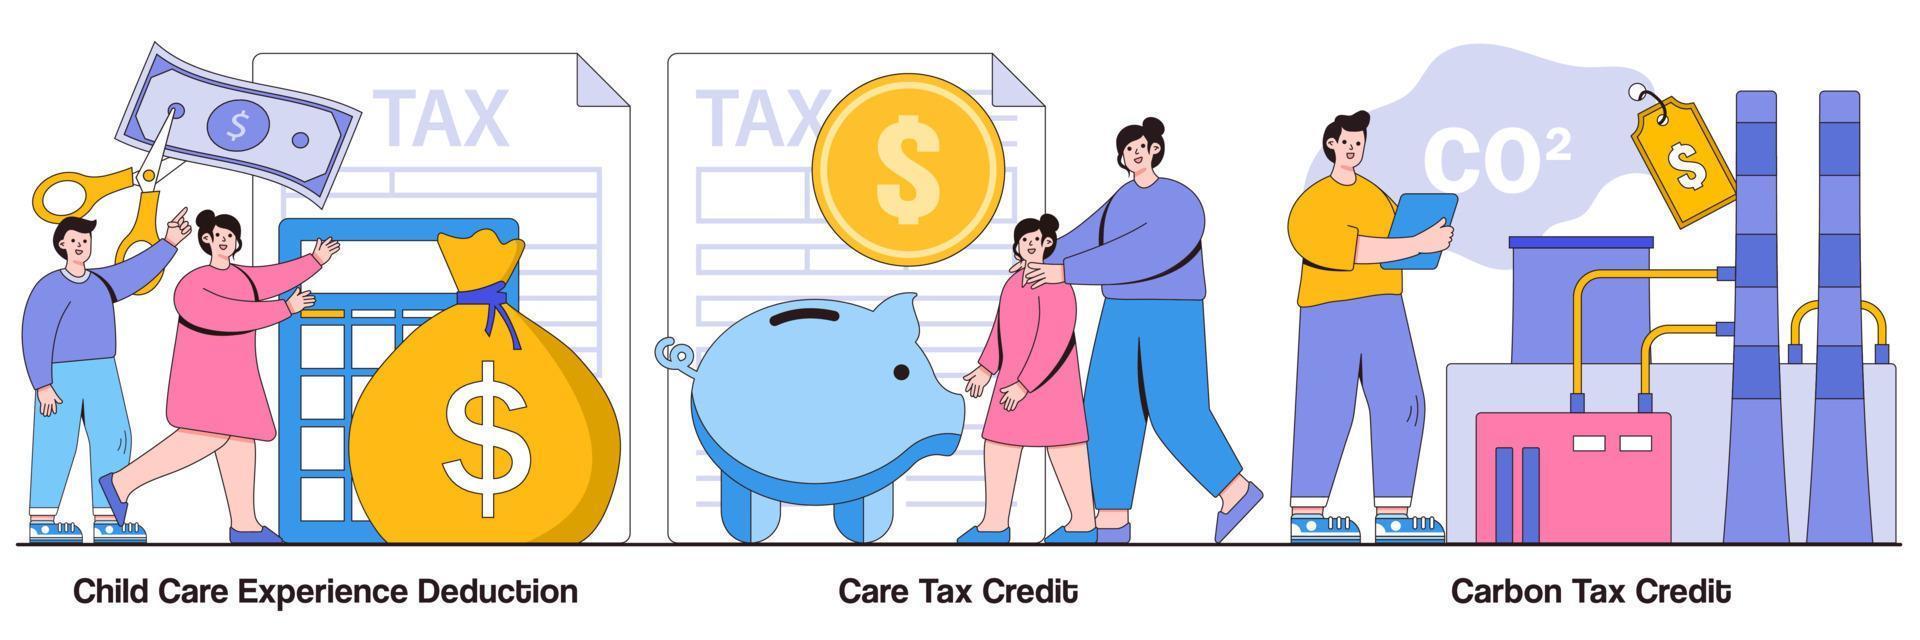 Pacchetto illustrato detrazione esperienza di assistenza all'infanzia e credito d'imposta sul carbonio vettore